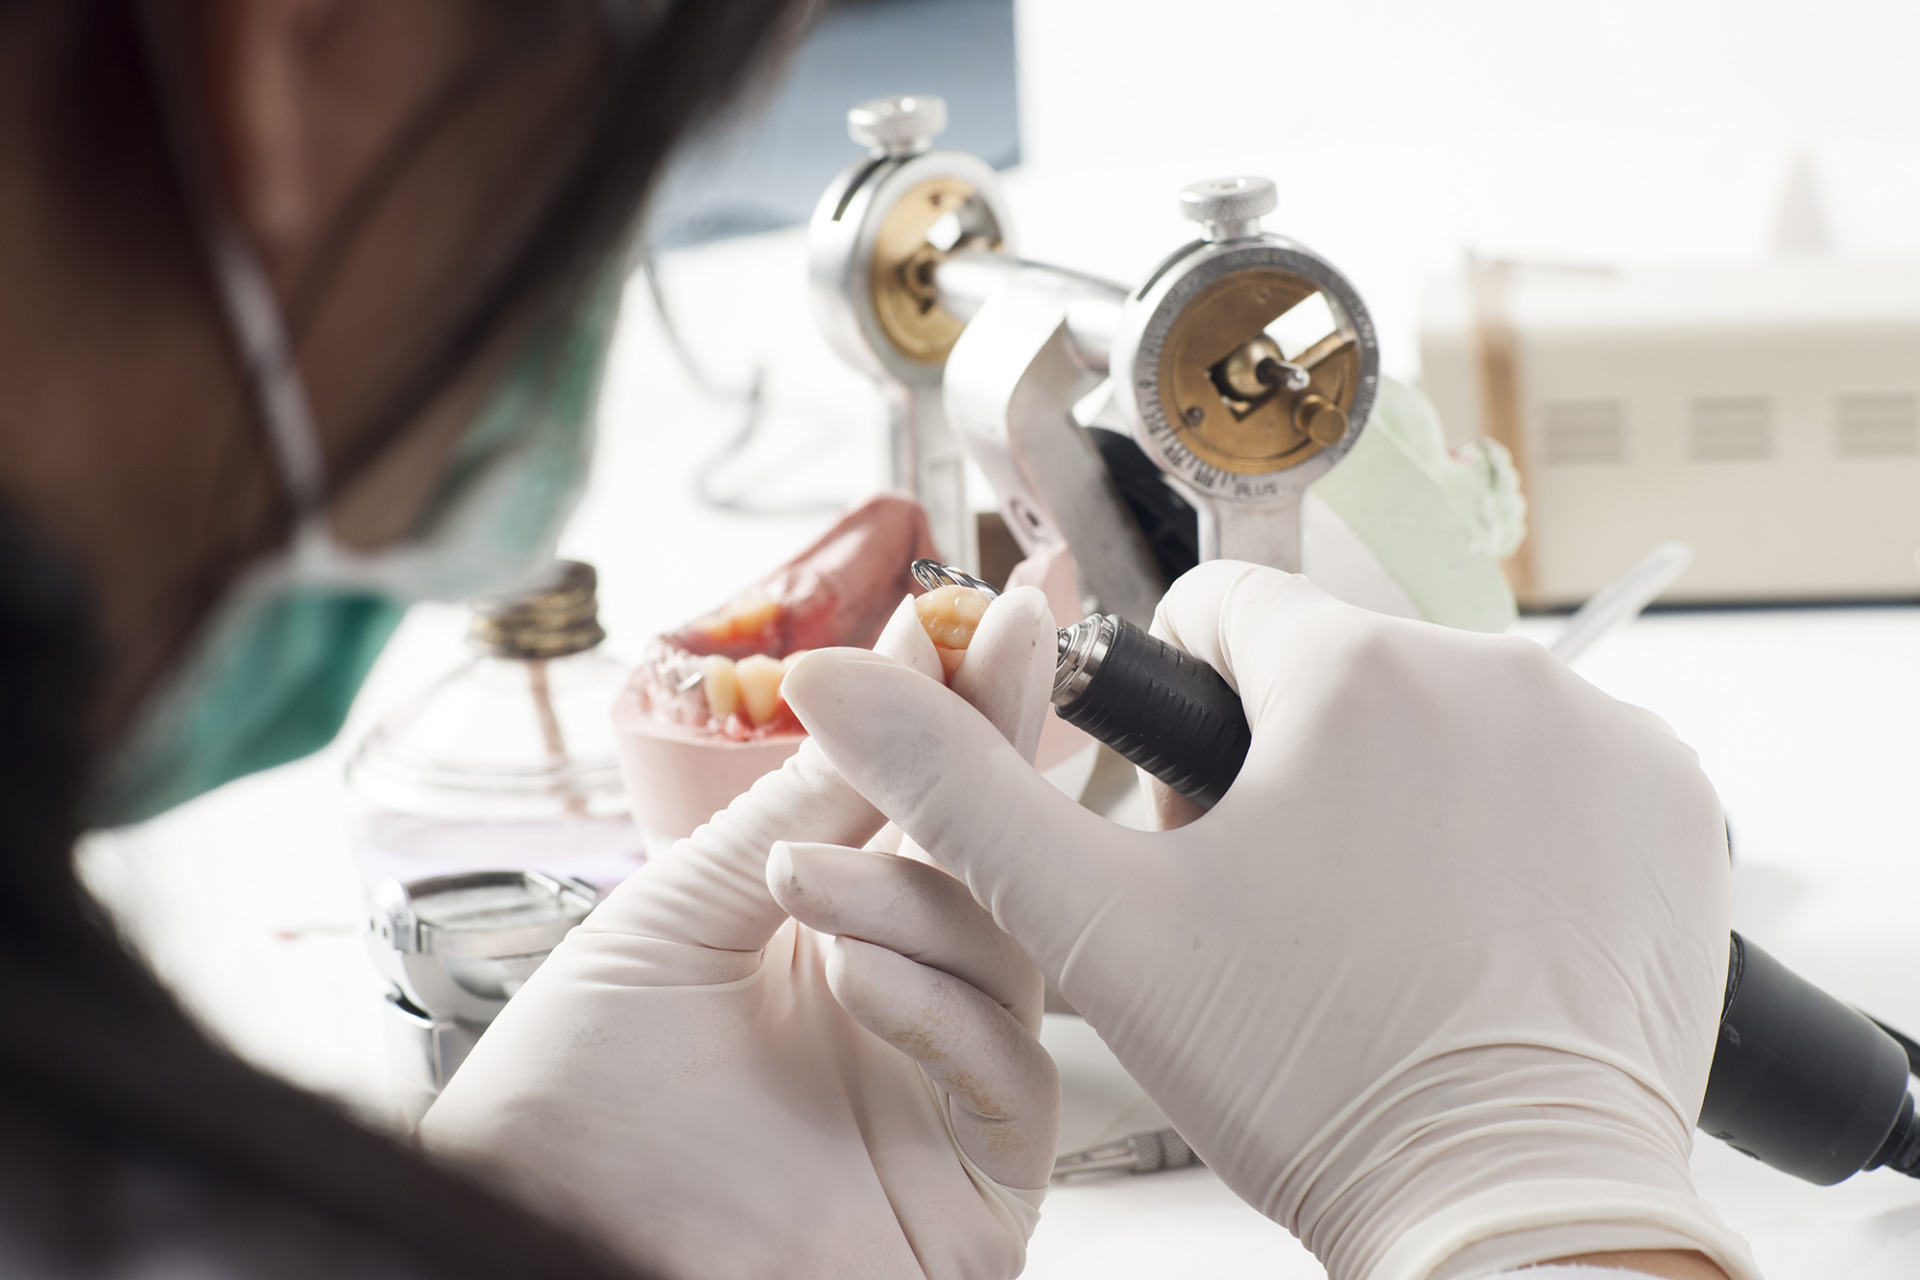 tecnico superior en protesis dentales b